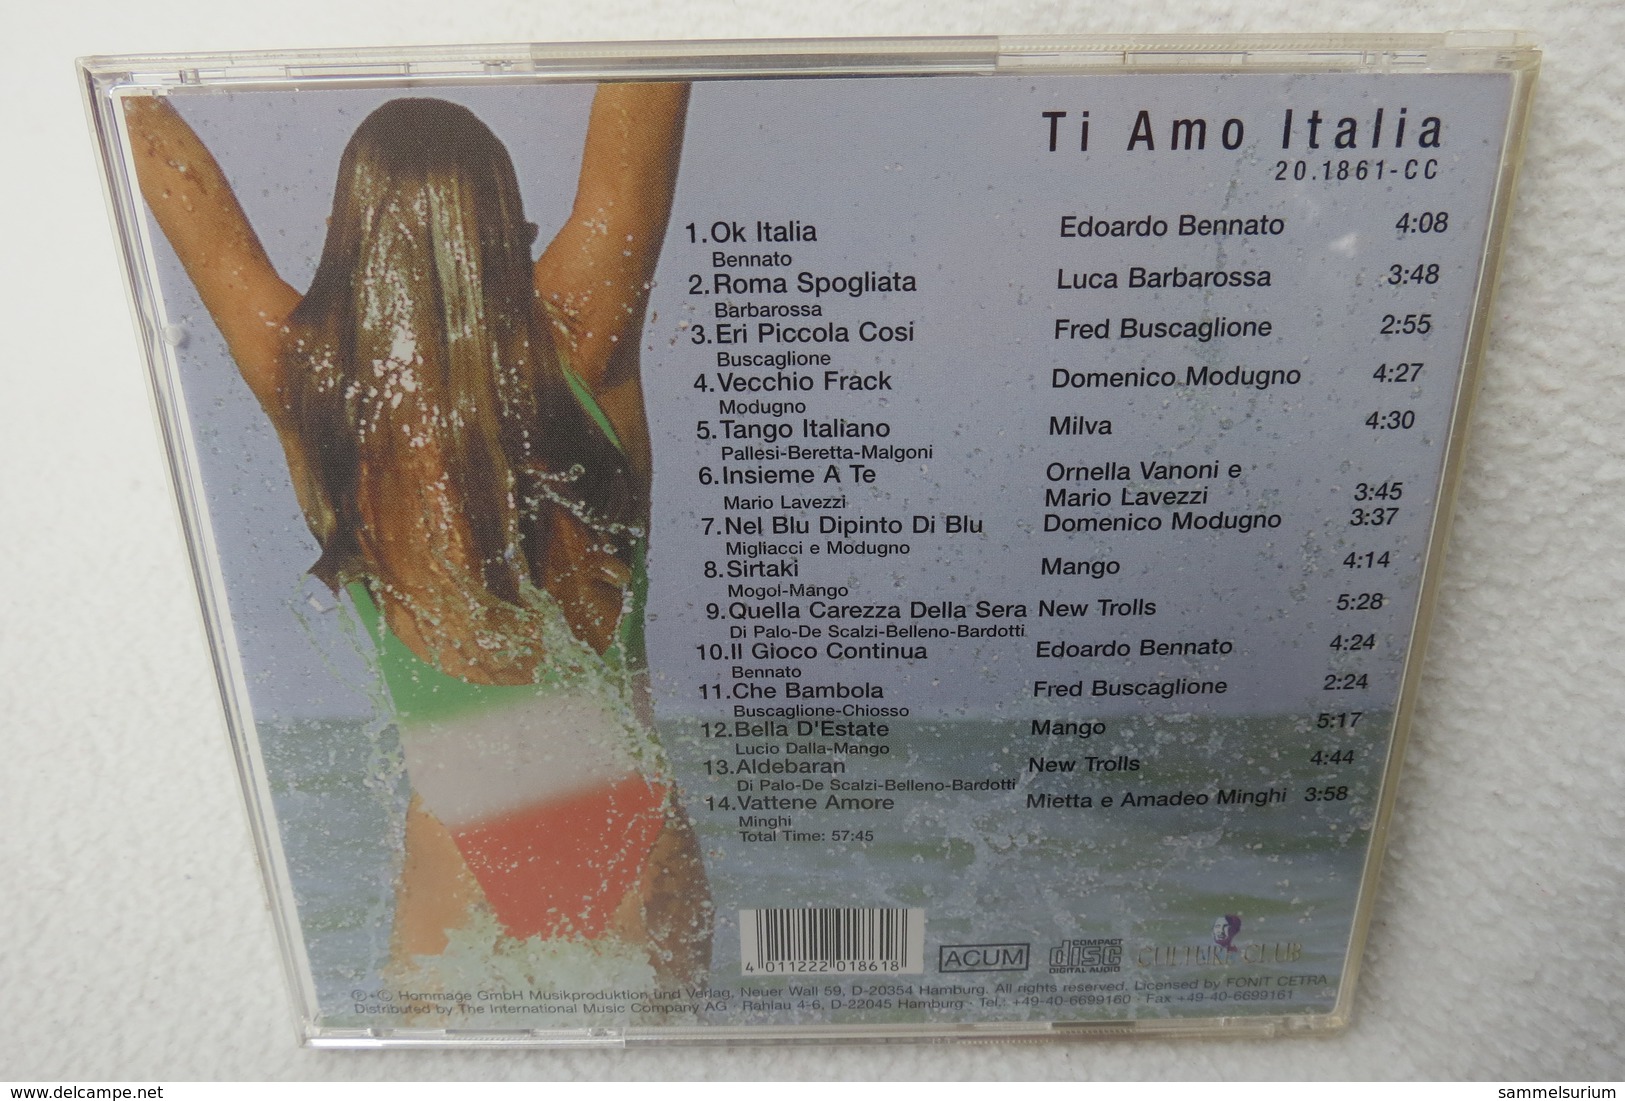 CD "Ti Amo Italia" - Other - Italian Music